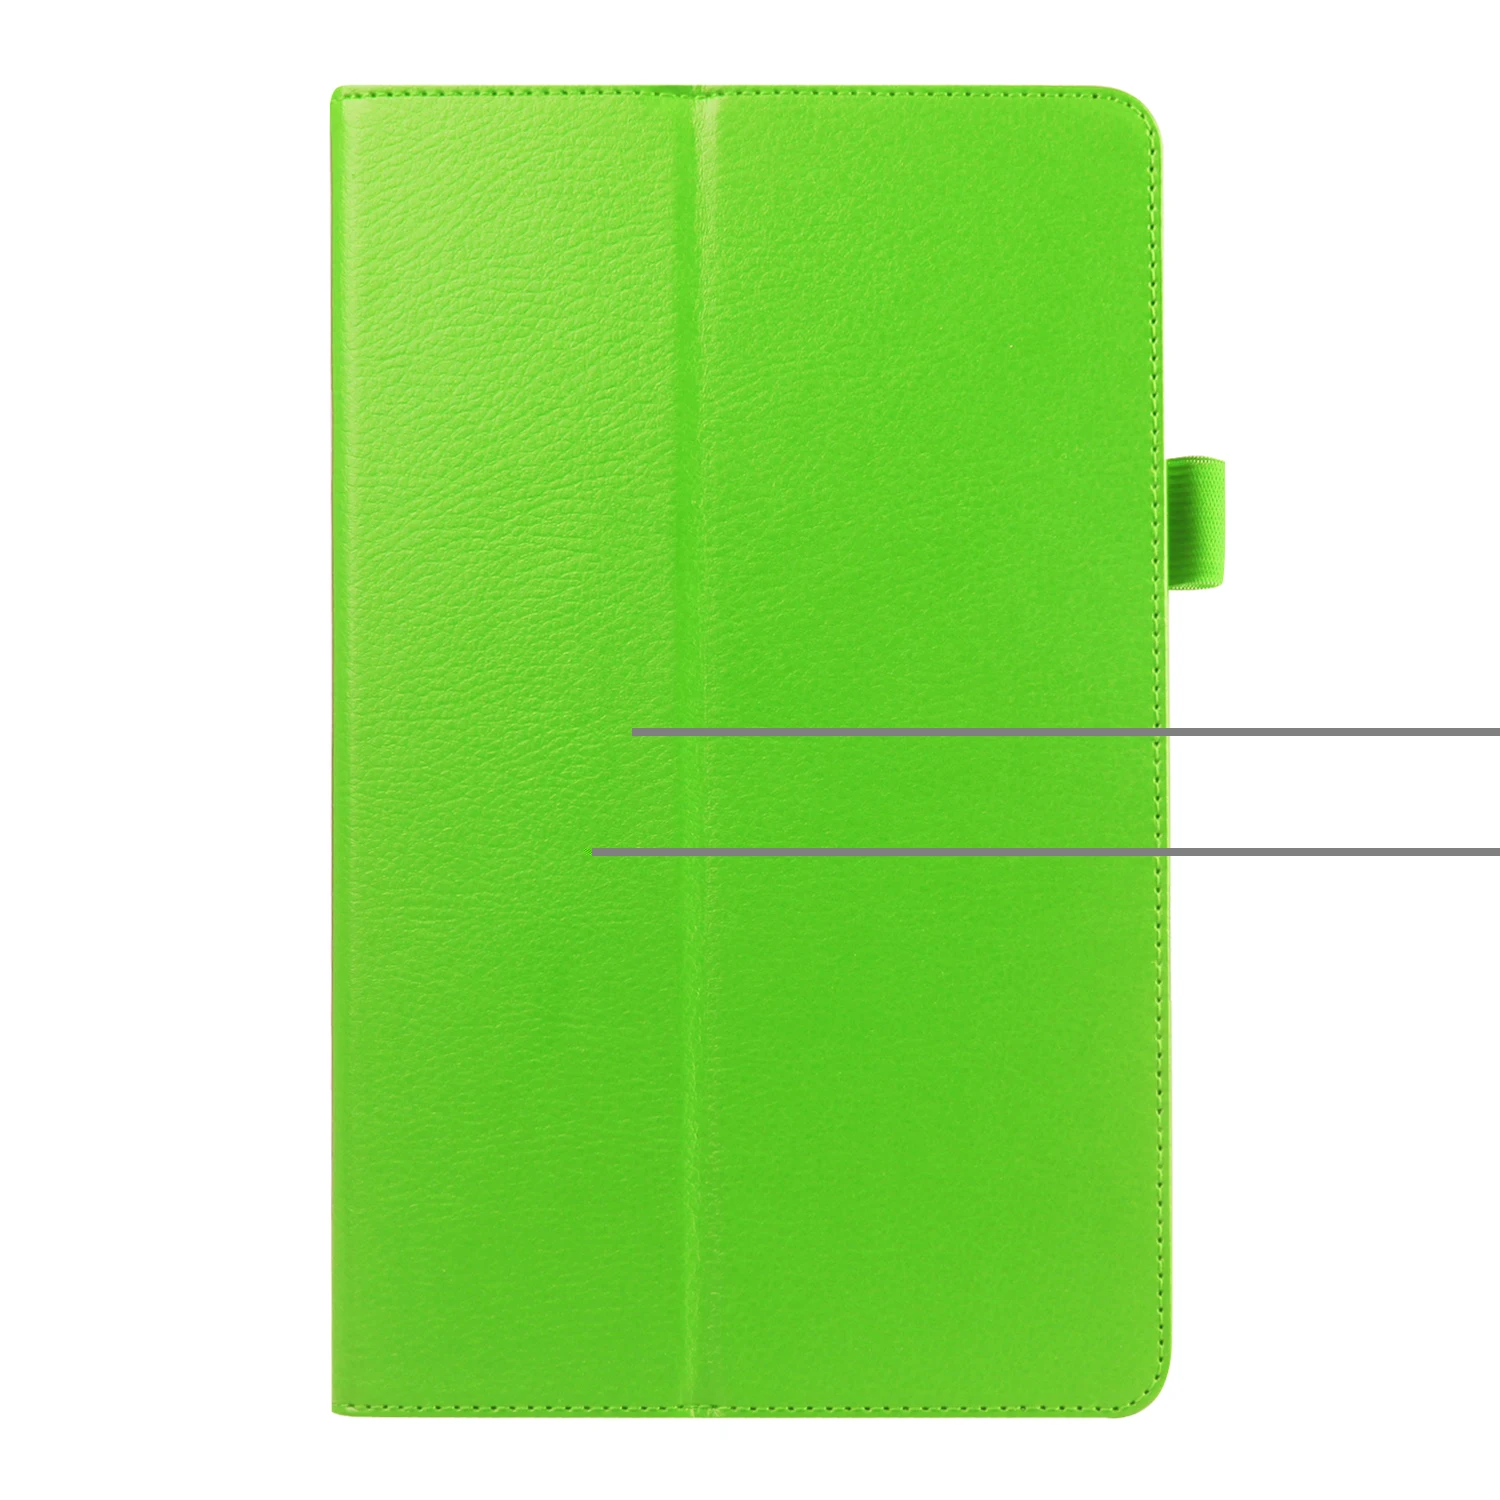 Новая Мода Личи Премиум Стенд из искусственной кожи чехол для samsung Galaxy Note 10,1 GT-N8000 N8010 N8020 чехол для планшета+ пленка+ ручка - Цвет: green